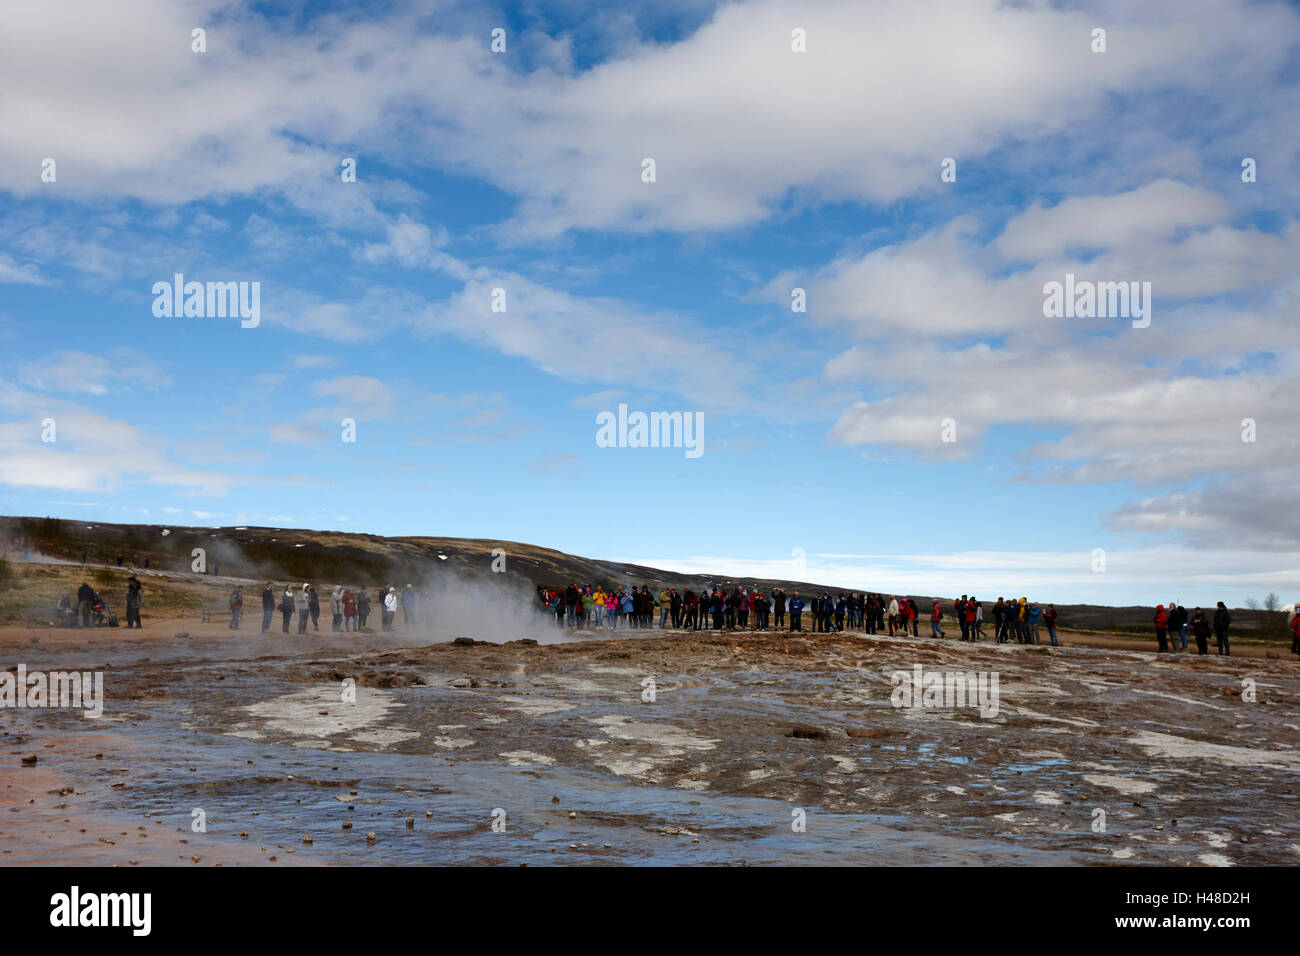 Menschen stehen auf chemischen und geologischen Ablagerungen, verursacht durch Geysir Wasser Überlauf Geysir Island Stockfoto